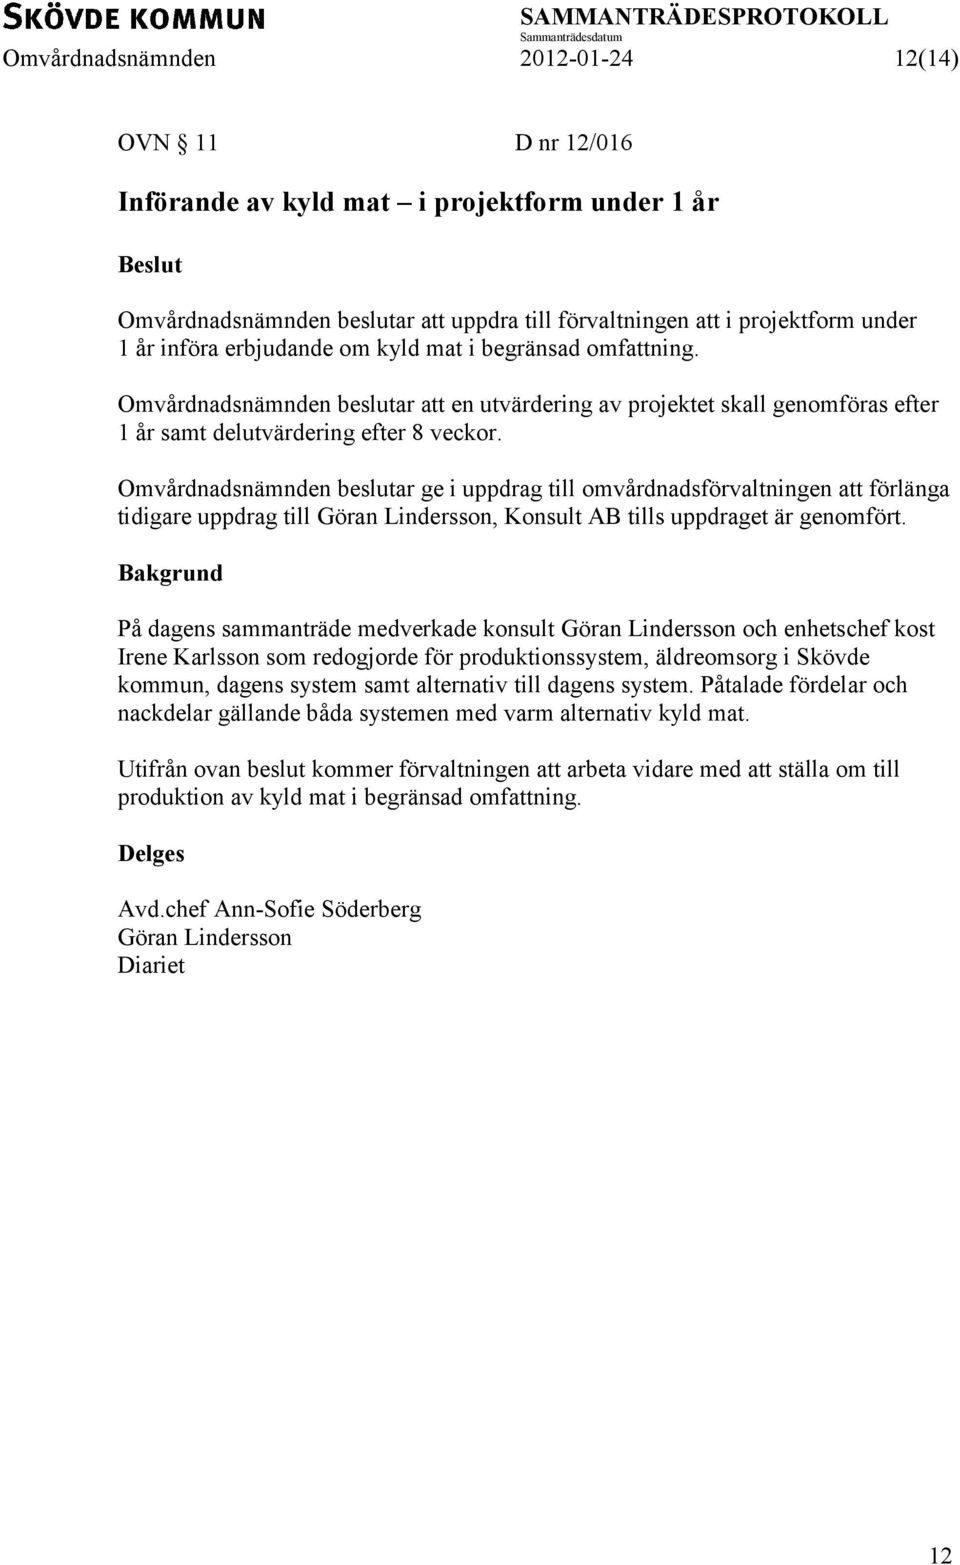 Omvårdnadsnämnden beslutar ge i uppdrag till omvårdnadsförvaltningen att förlänga tidigare uppdrag till Göran Lindersson, Konsult AB tills uppdraget är genomfört.